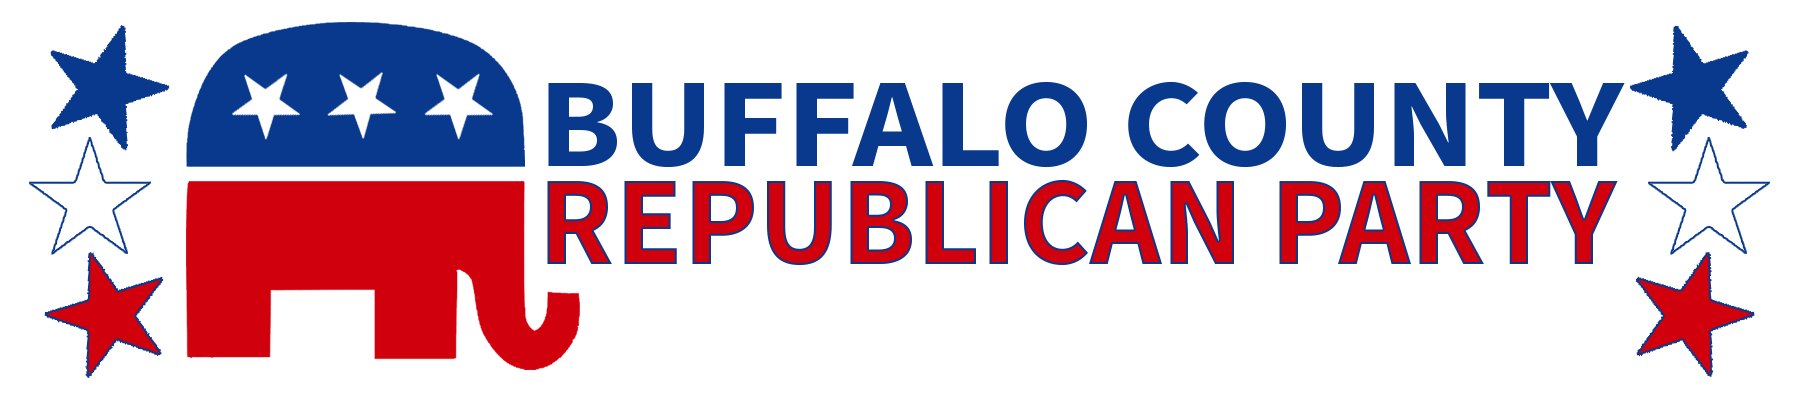 Buffalo County Republican Party